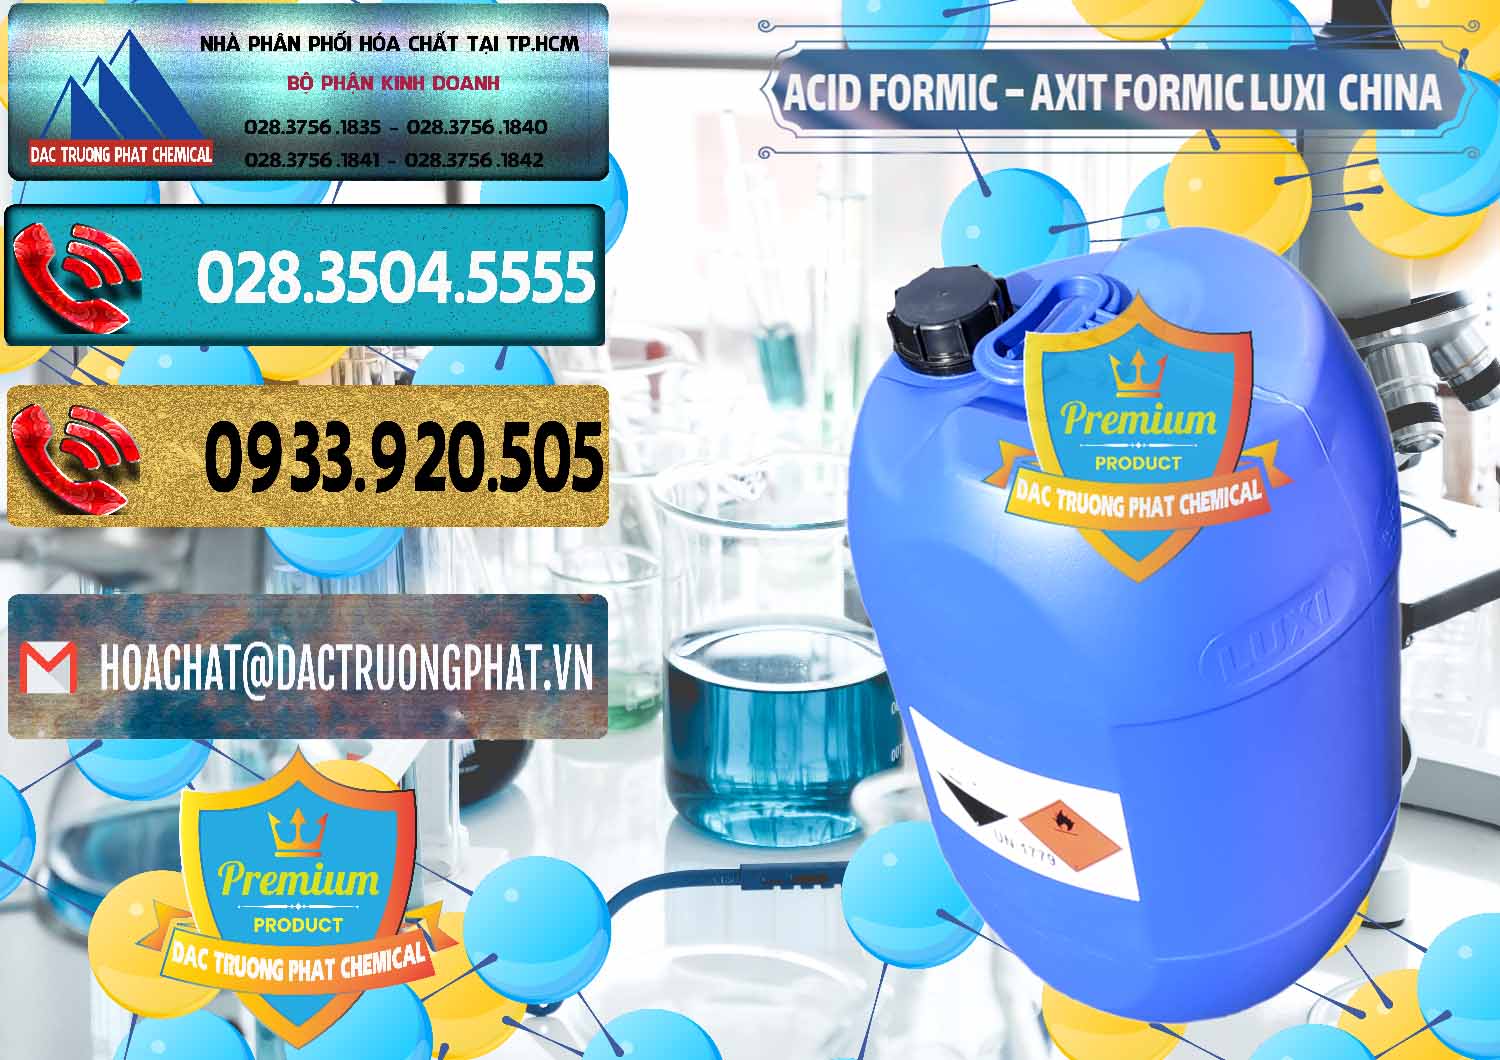 Nơi bán - cung cấp Acid Formic - Axit Formic Luxi Trung Quốc China - 0029 - Công ty phân phối và nhập khẩu hóa chất tại TP.HCM - hoachatdetnhuom.com